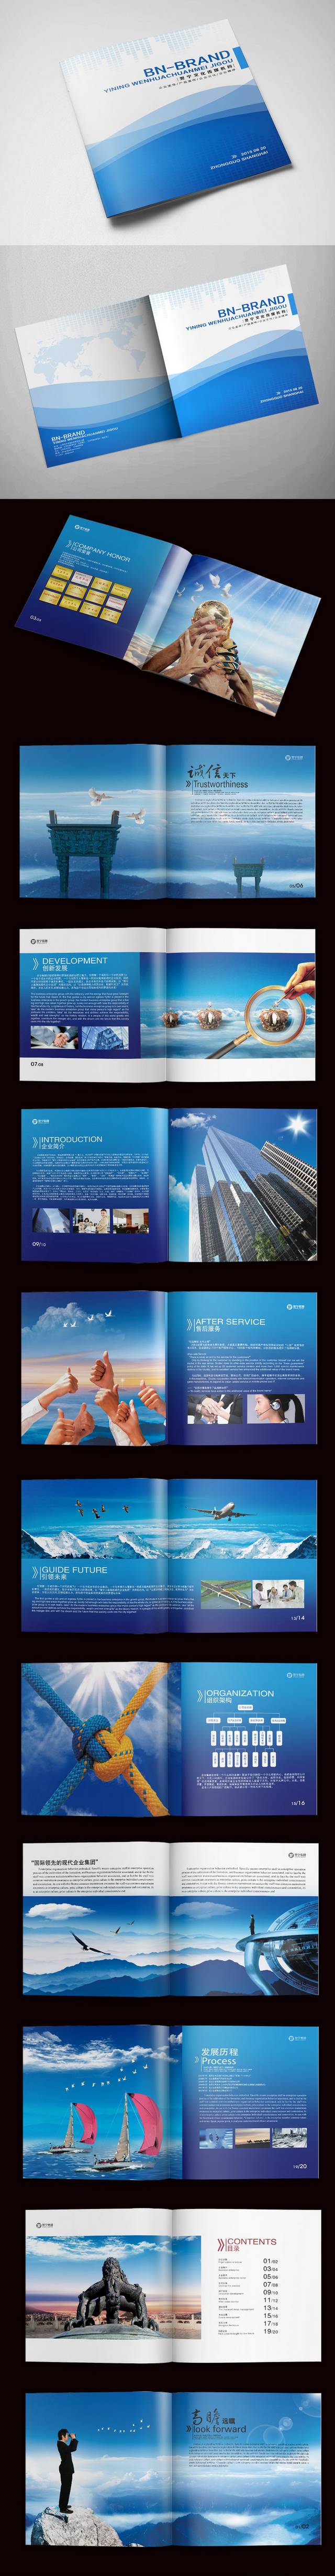 蓝色简约企业宣传画册模板